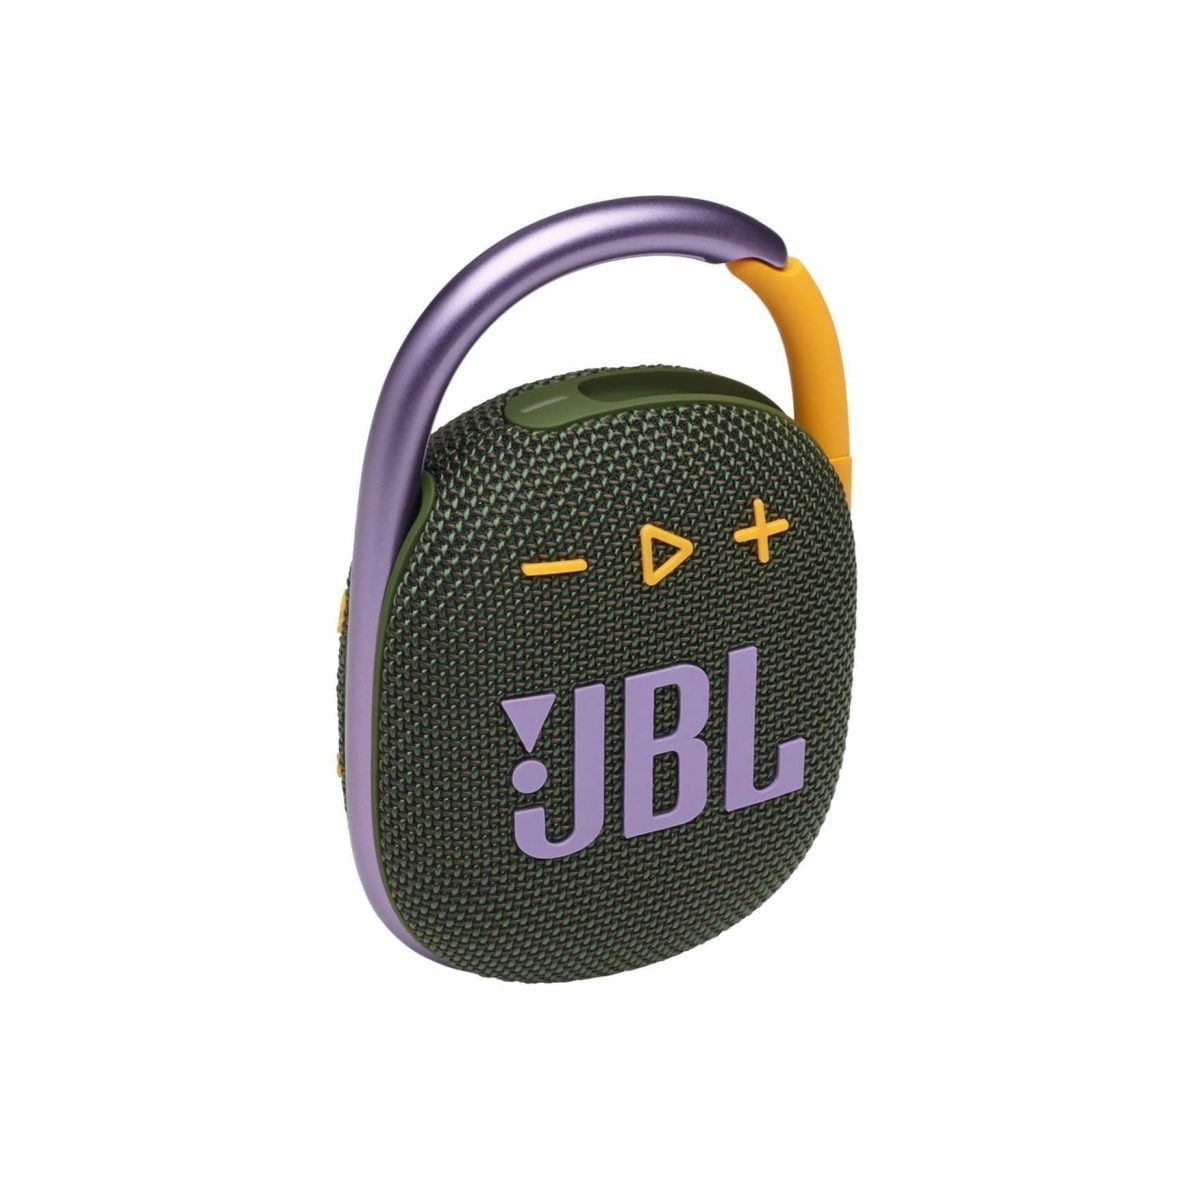 جي بي ال &Lt;H1&Gt;Jbl Clip4 مكبر صوت مقاوم للماء محمول للغاية - أخضر&Lt;/H1&Gt;
Https://Www.youtube.com/Watch?V=Vufgwfbax_K مقطع وتشغيل رائع ومحمول ومقاوم للماء. يوفر Jbl Clip 4 ذو المظهر الجديد النابض بالحياة صوت Jbl Original Pro الغني بشكل مدهش في حزمة مدمجة. الشكل البيضاوي الفريد يناسب يدك بسهولة. ملفوفة بالكامل بأقمشة ملونة بتفاصيل معبرة مستوحاة من أزياء الشارع الحالية ، من السهل أن تتناسب مع أسلوبك. خطافات حلقة تسلق مدمجة بالكامل على الفور في الحقائب أو الأحزمة أو الإبزيم لإحضار نغماتك المفضلة إلى أي مكان. مقاومة للماء والغبار ووقت تشغيل يصل إلى 10 ساعات ، فهي متينة بما يكفي لوضعها في أي مكان تستكشفه. &Nbsp; جي بي ال Clip4 Jbl Clip4 مكبر صوت مقاوم للماء محمول للغاية - أخضر